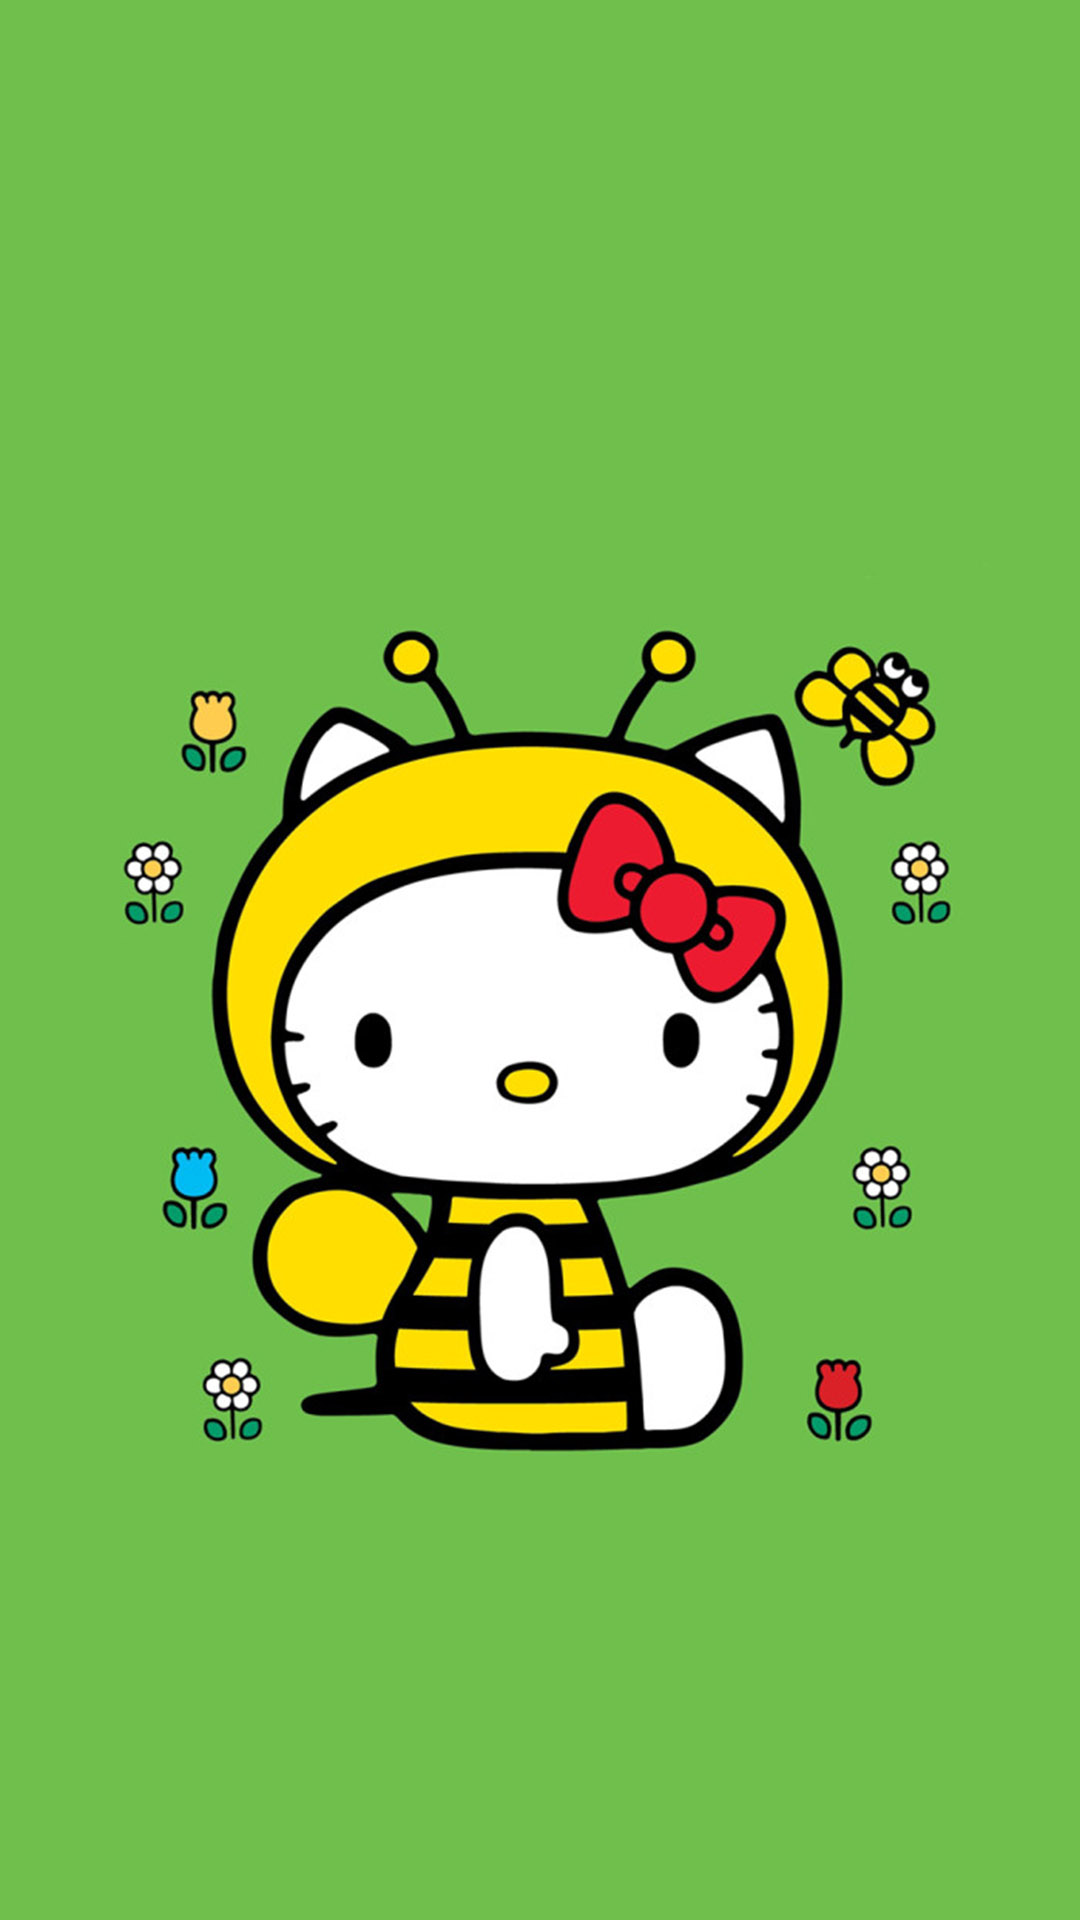 可爱卡通Hello Kitty高清图片大全(7)